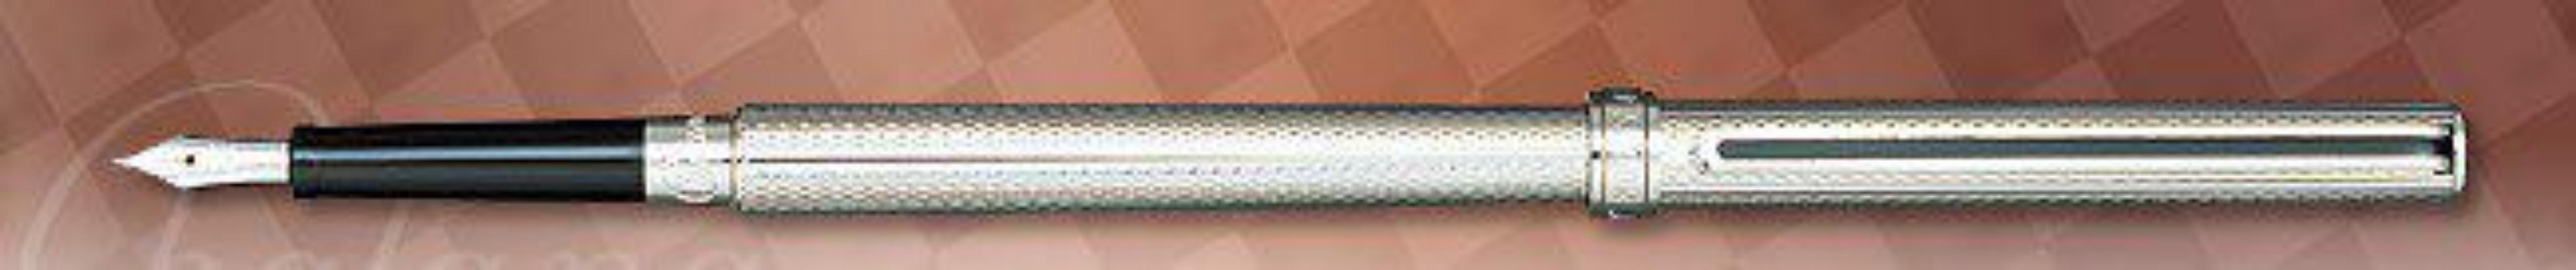 Saylor Pluma de bolsillo Estilográfica realizada en cobre rodiado,